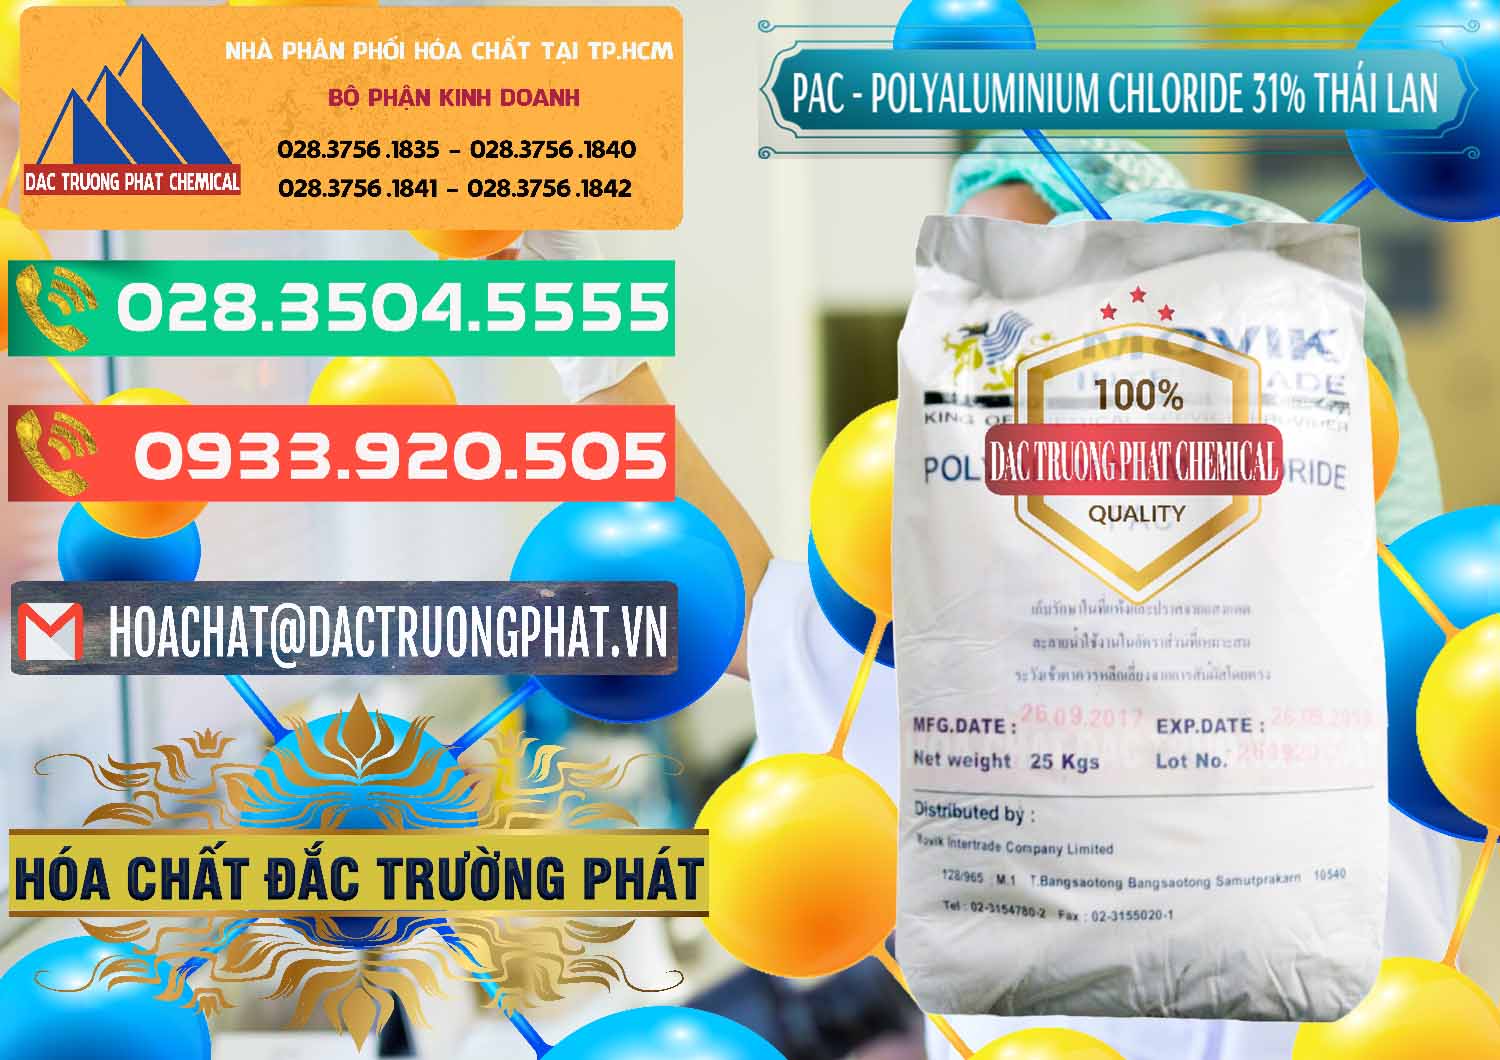 Công ty chuyên bán - cung cấp PAC - Polyaluminium Chloride 31% Thái Lan Thailand - 0469 - Bán - phân phối hóa chất tại TP.HCM - congtyhoachat.com.vn